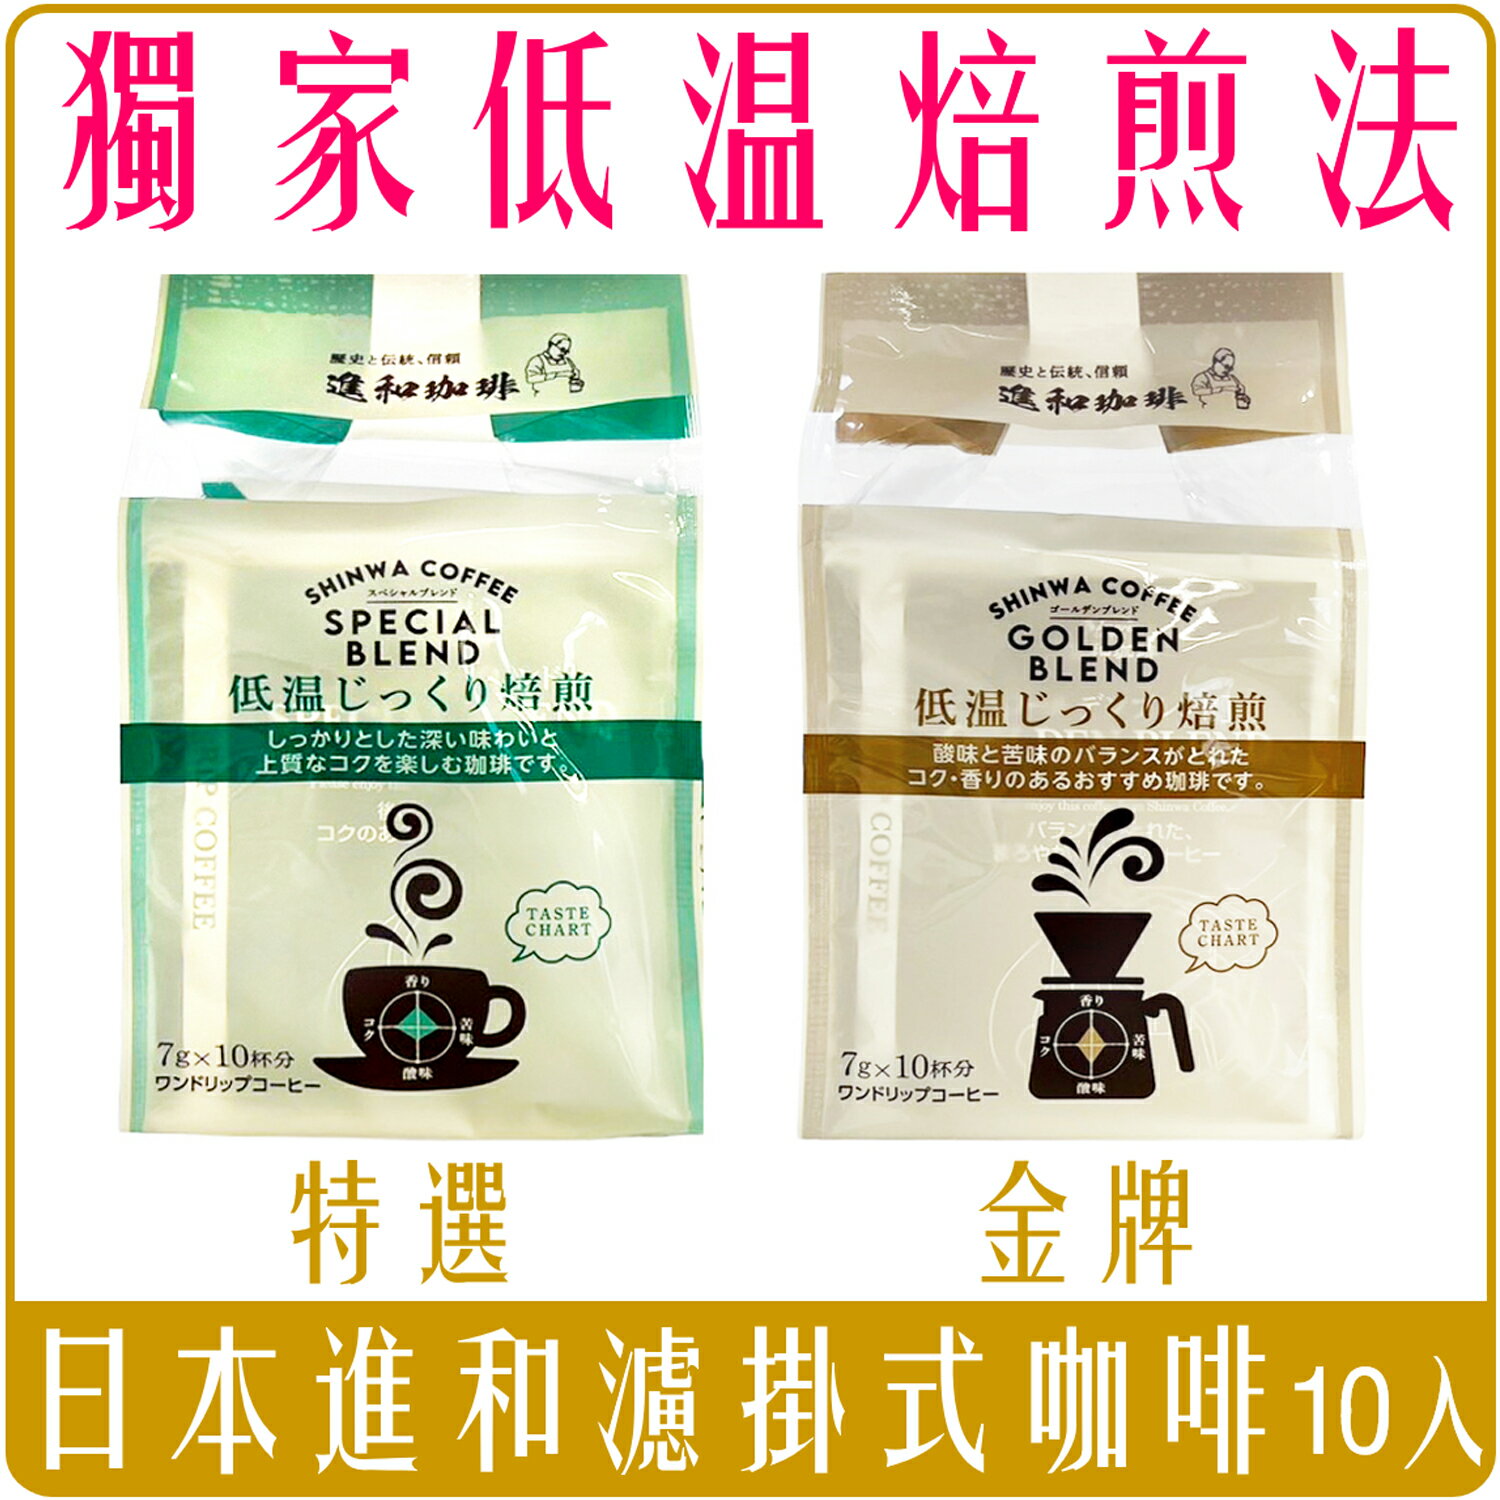 《 Chara 微百貨 》 日本 進和 低溫 烘焙 焙煎 咖啡 濾掛式 7g X 10包入 團購 批發